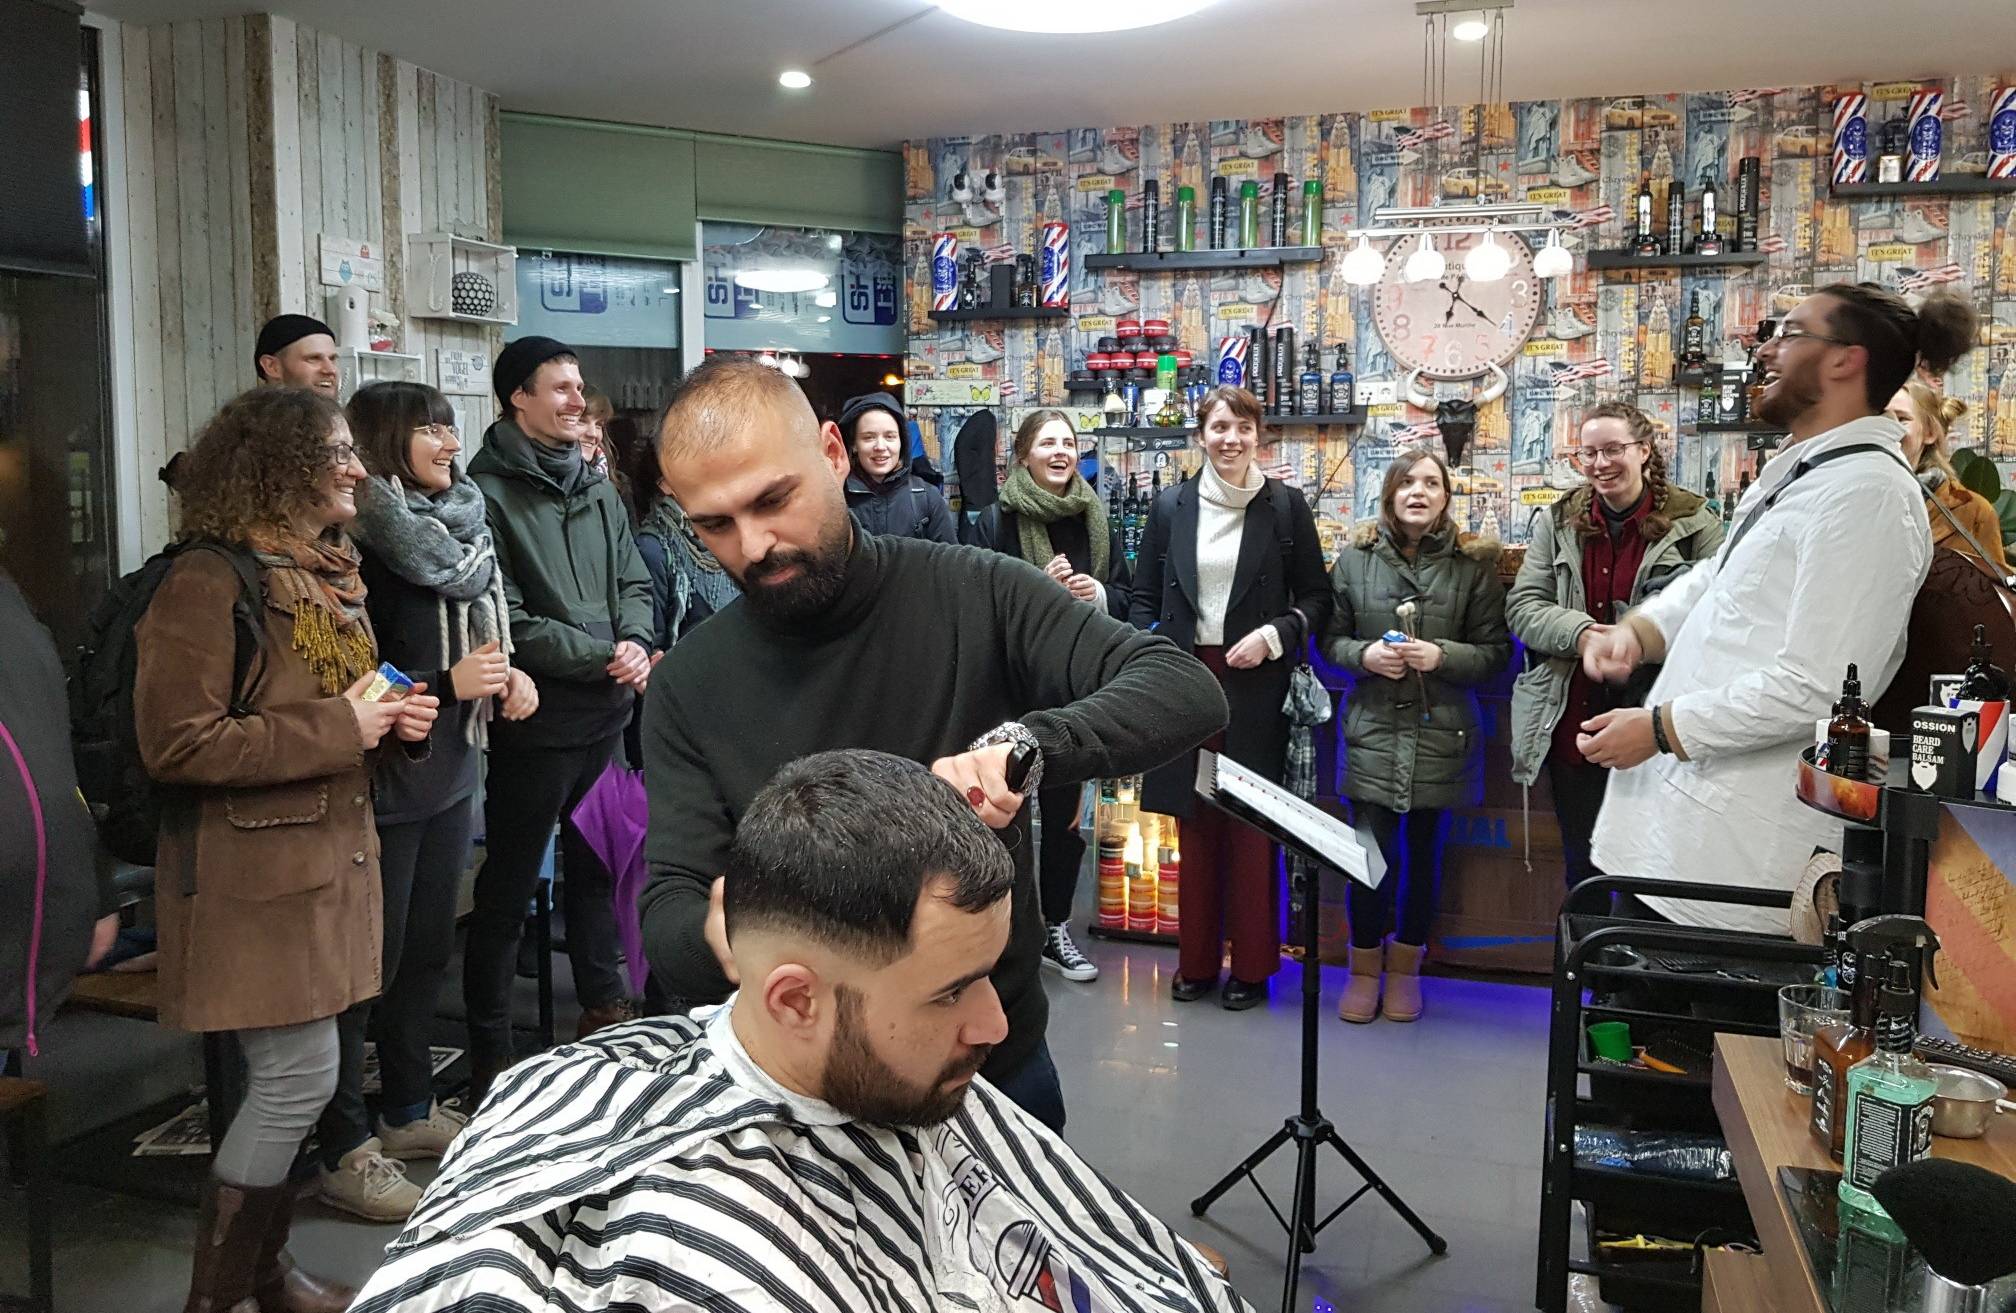 Musikalischer Stopp im Barbershop.